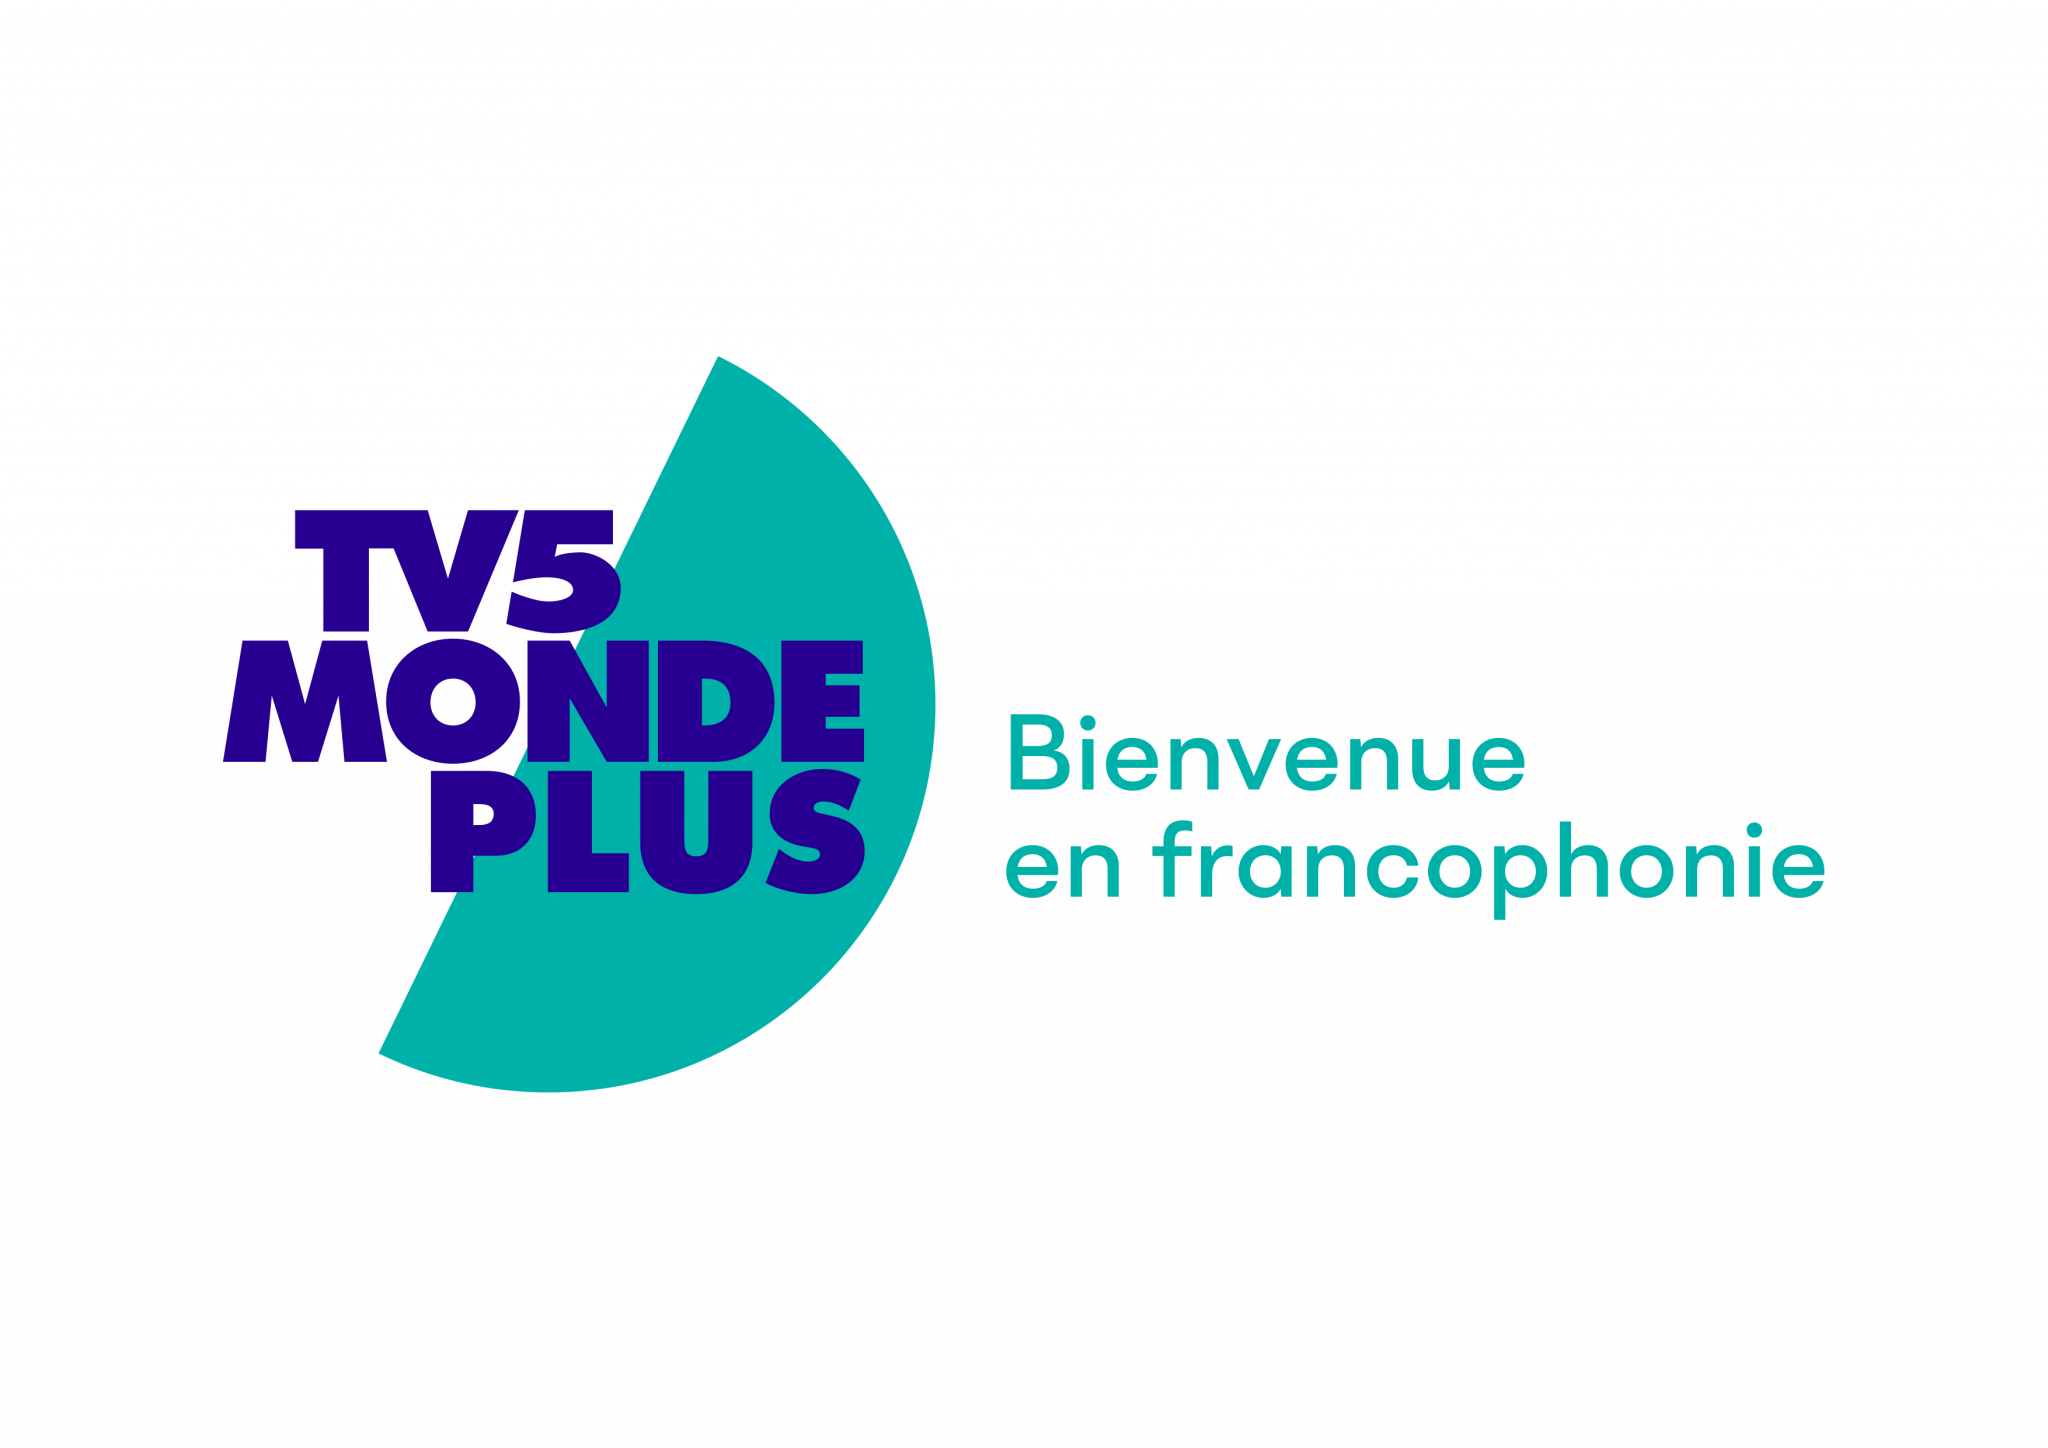 Descubre la plataforma gratuita de series y películas en francés